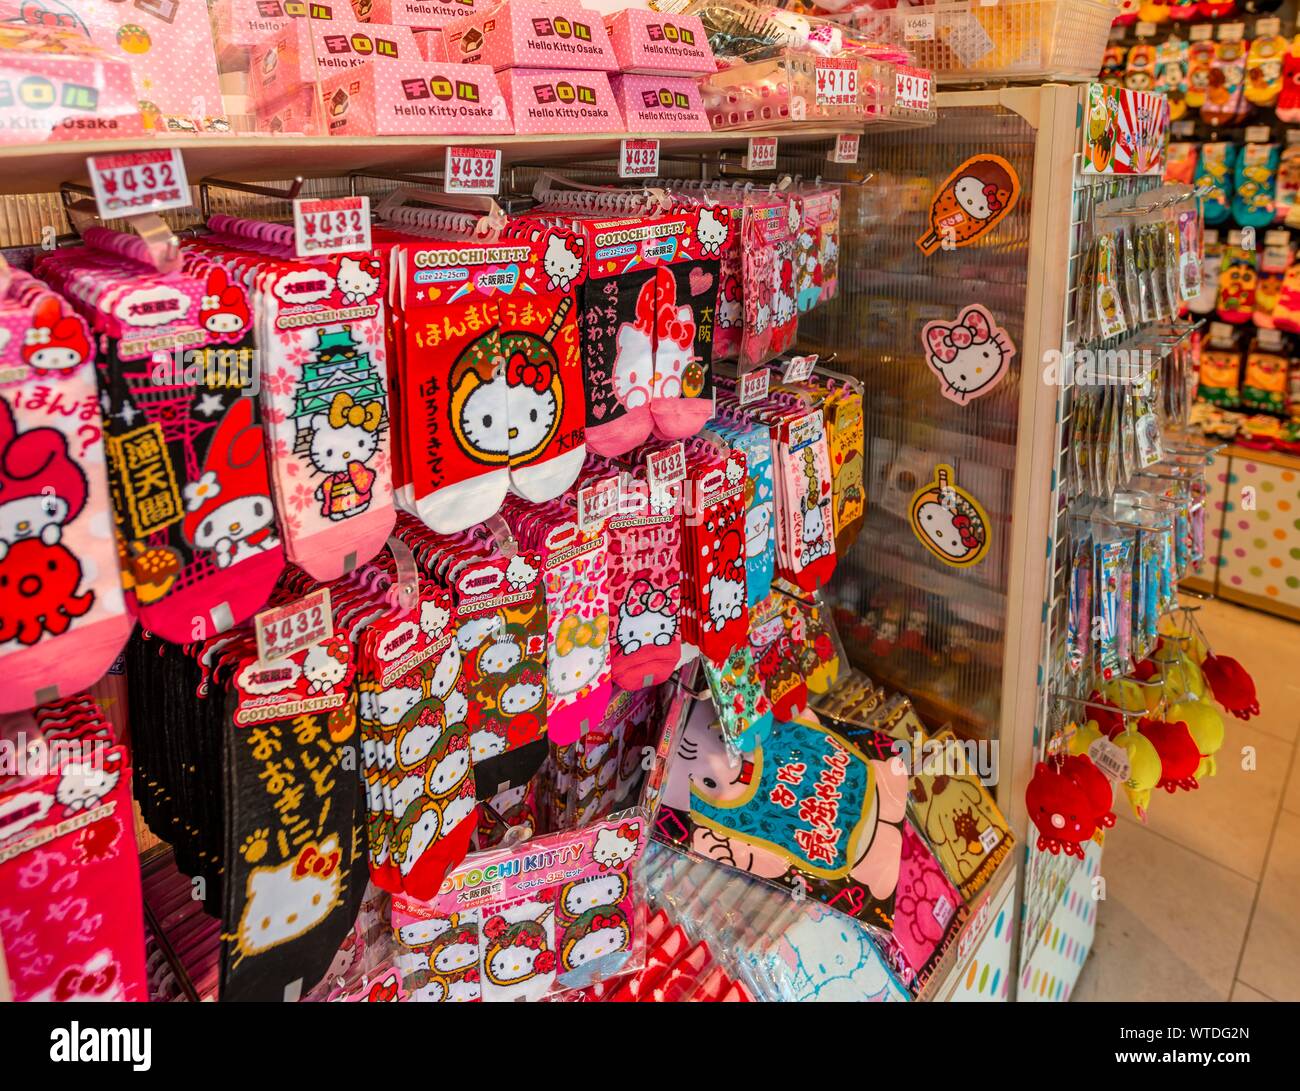 Vente de chaussettes Hello Kitty, Osaka, Japon Banque D'Images